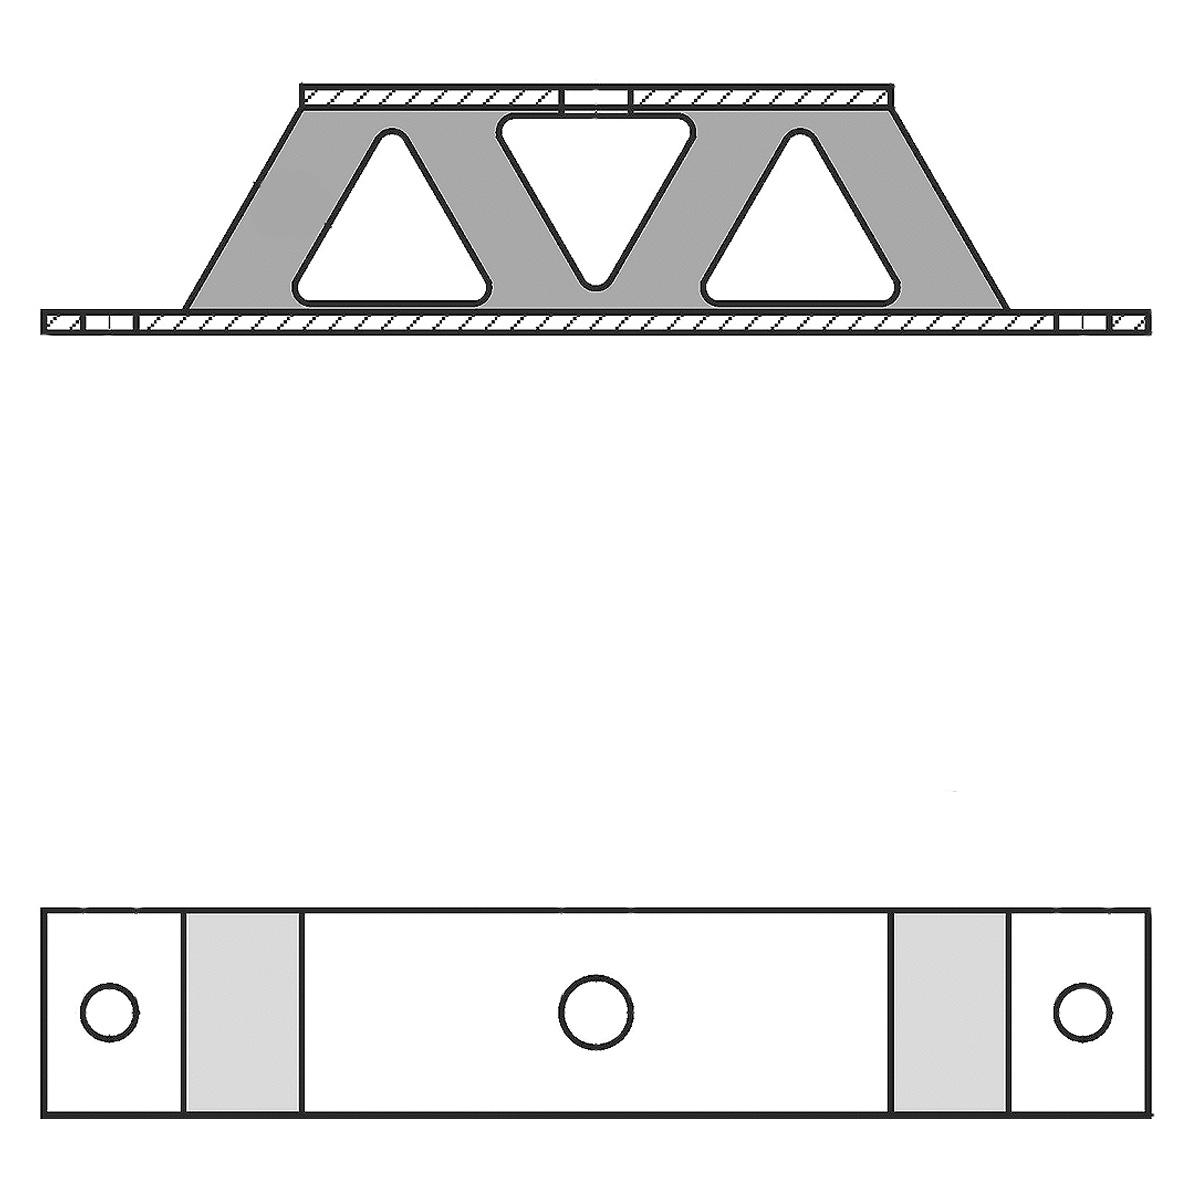 Zeichnung eines Gummi-Metall-Geräteelementes mit Bodenplatte, Trägerplatte und dazwischenliegendem w-förmigen Elastomerkorpus auf weißem Hintergrund